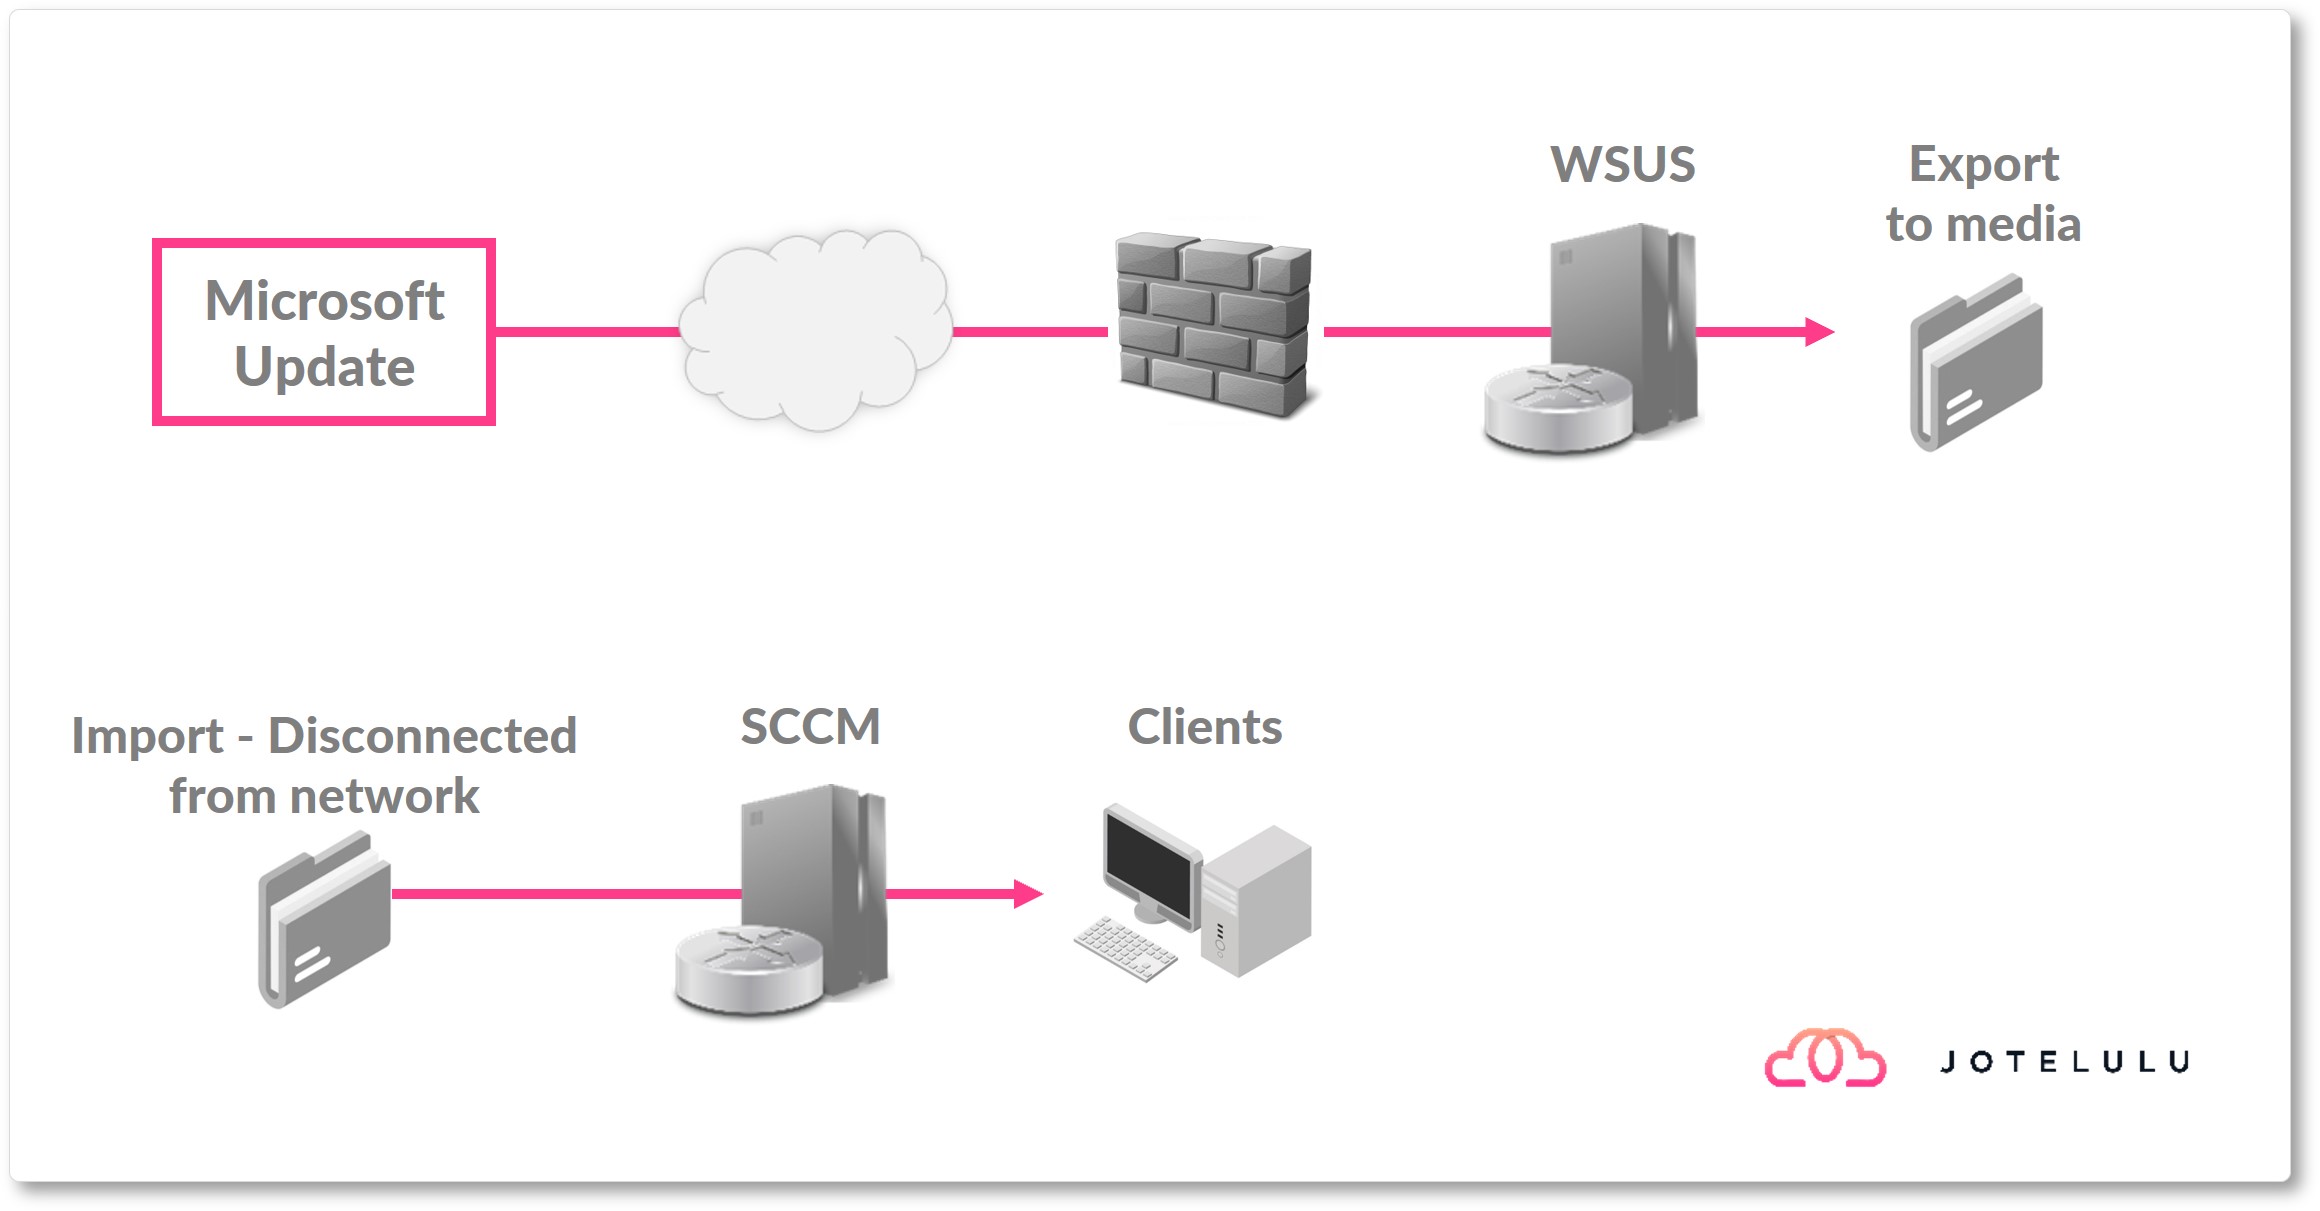 Image. Arquitetura com servidores WSUS integrados noutra solução.